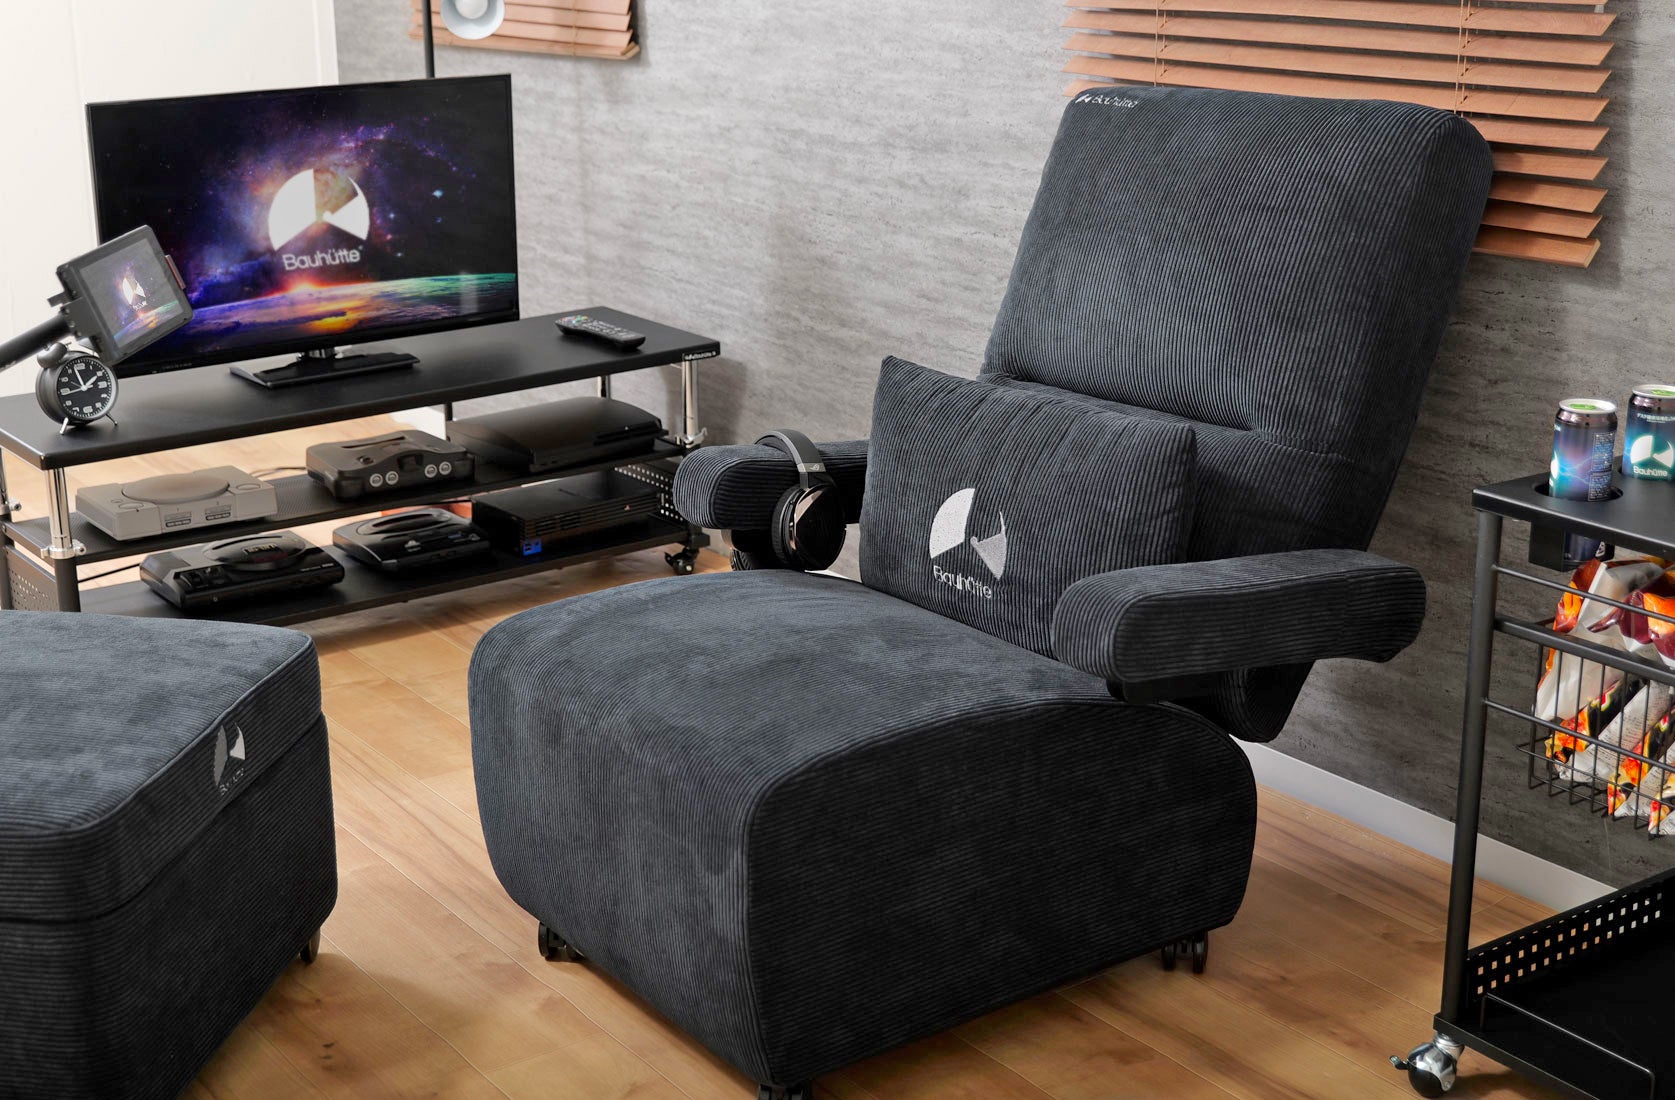 أريكة ديلوكس للألعاب Bauhutte باللون الأسود متوقفة بجوار مركز الترفيه المنزلي الذي يضم العديد من وحدات التحكم.